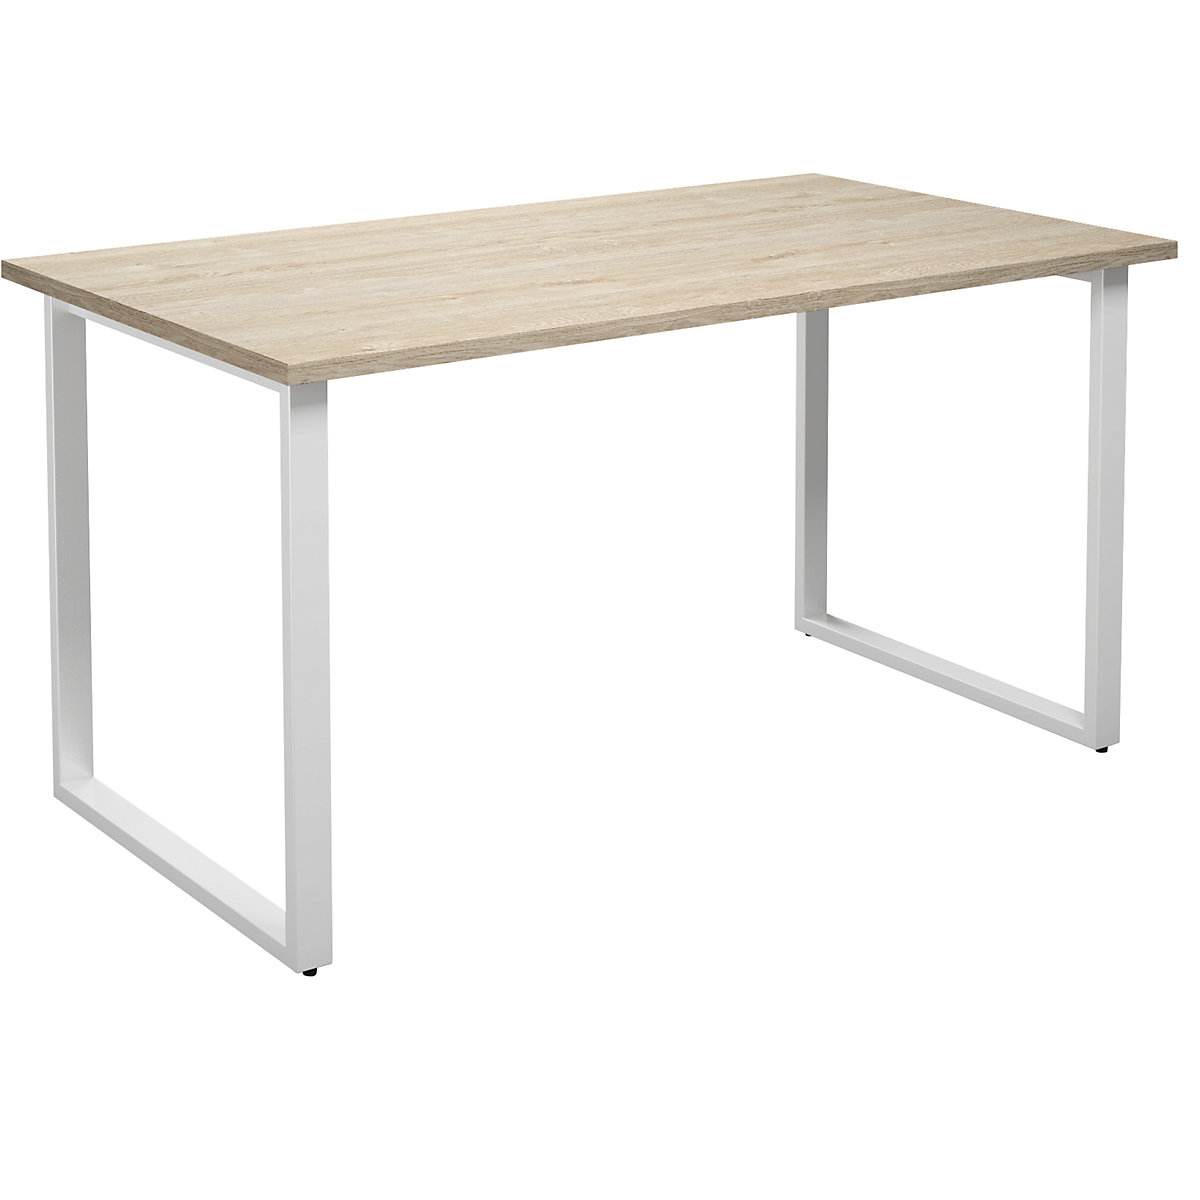 DUO-O multi-purpose desk, straight tabletop